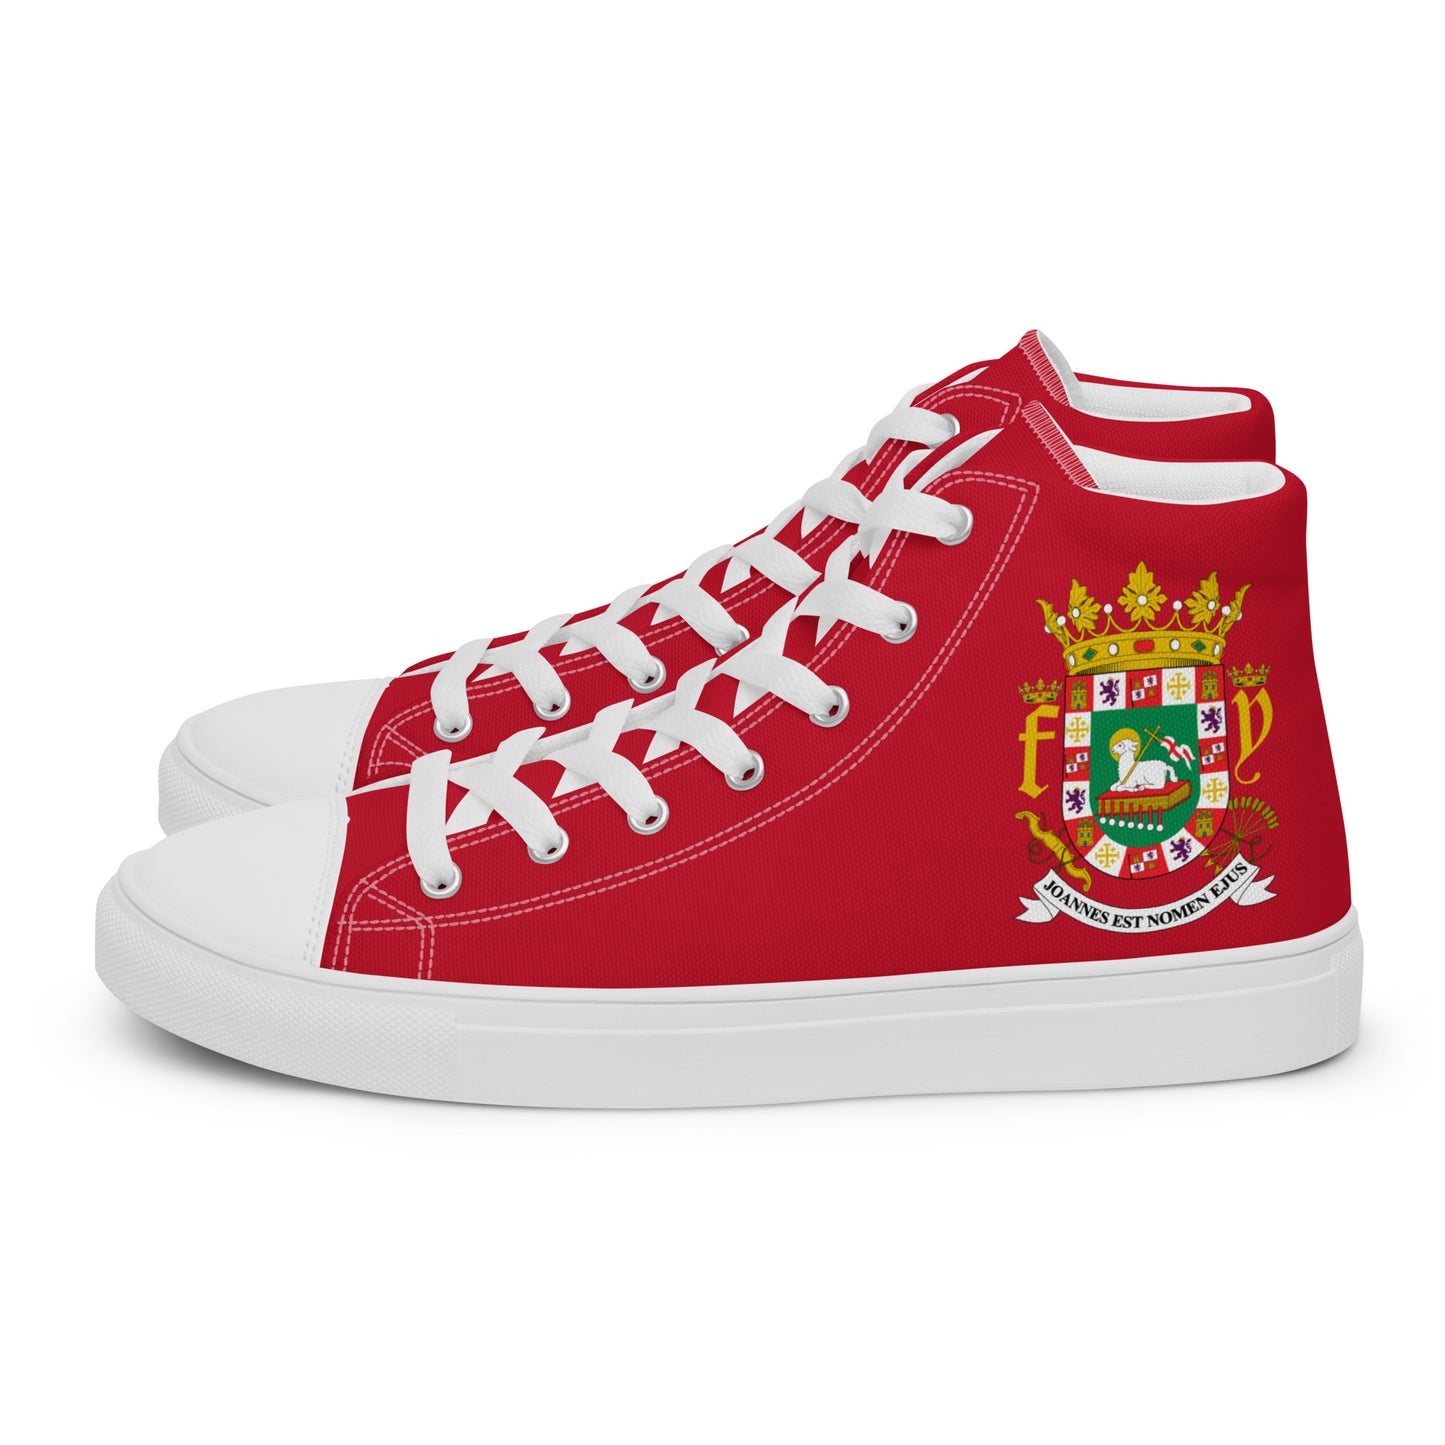 Puerto Rico - Hombre - Rojo - Zapatos High top